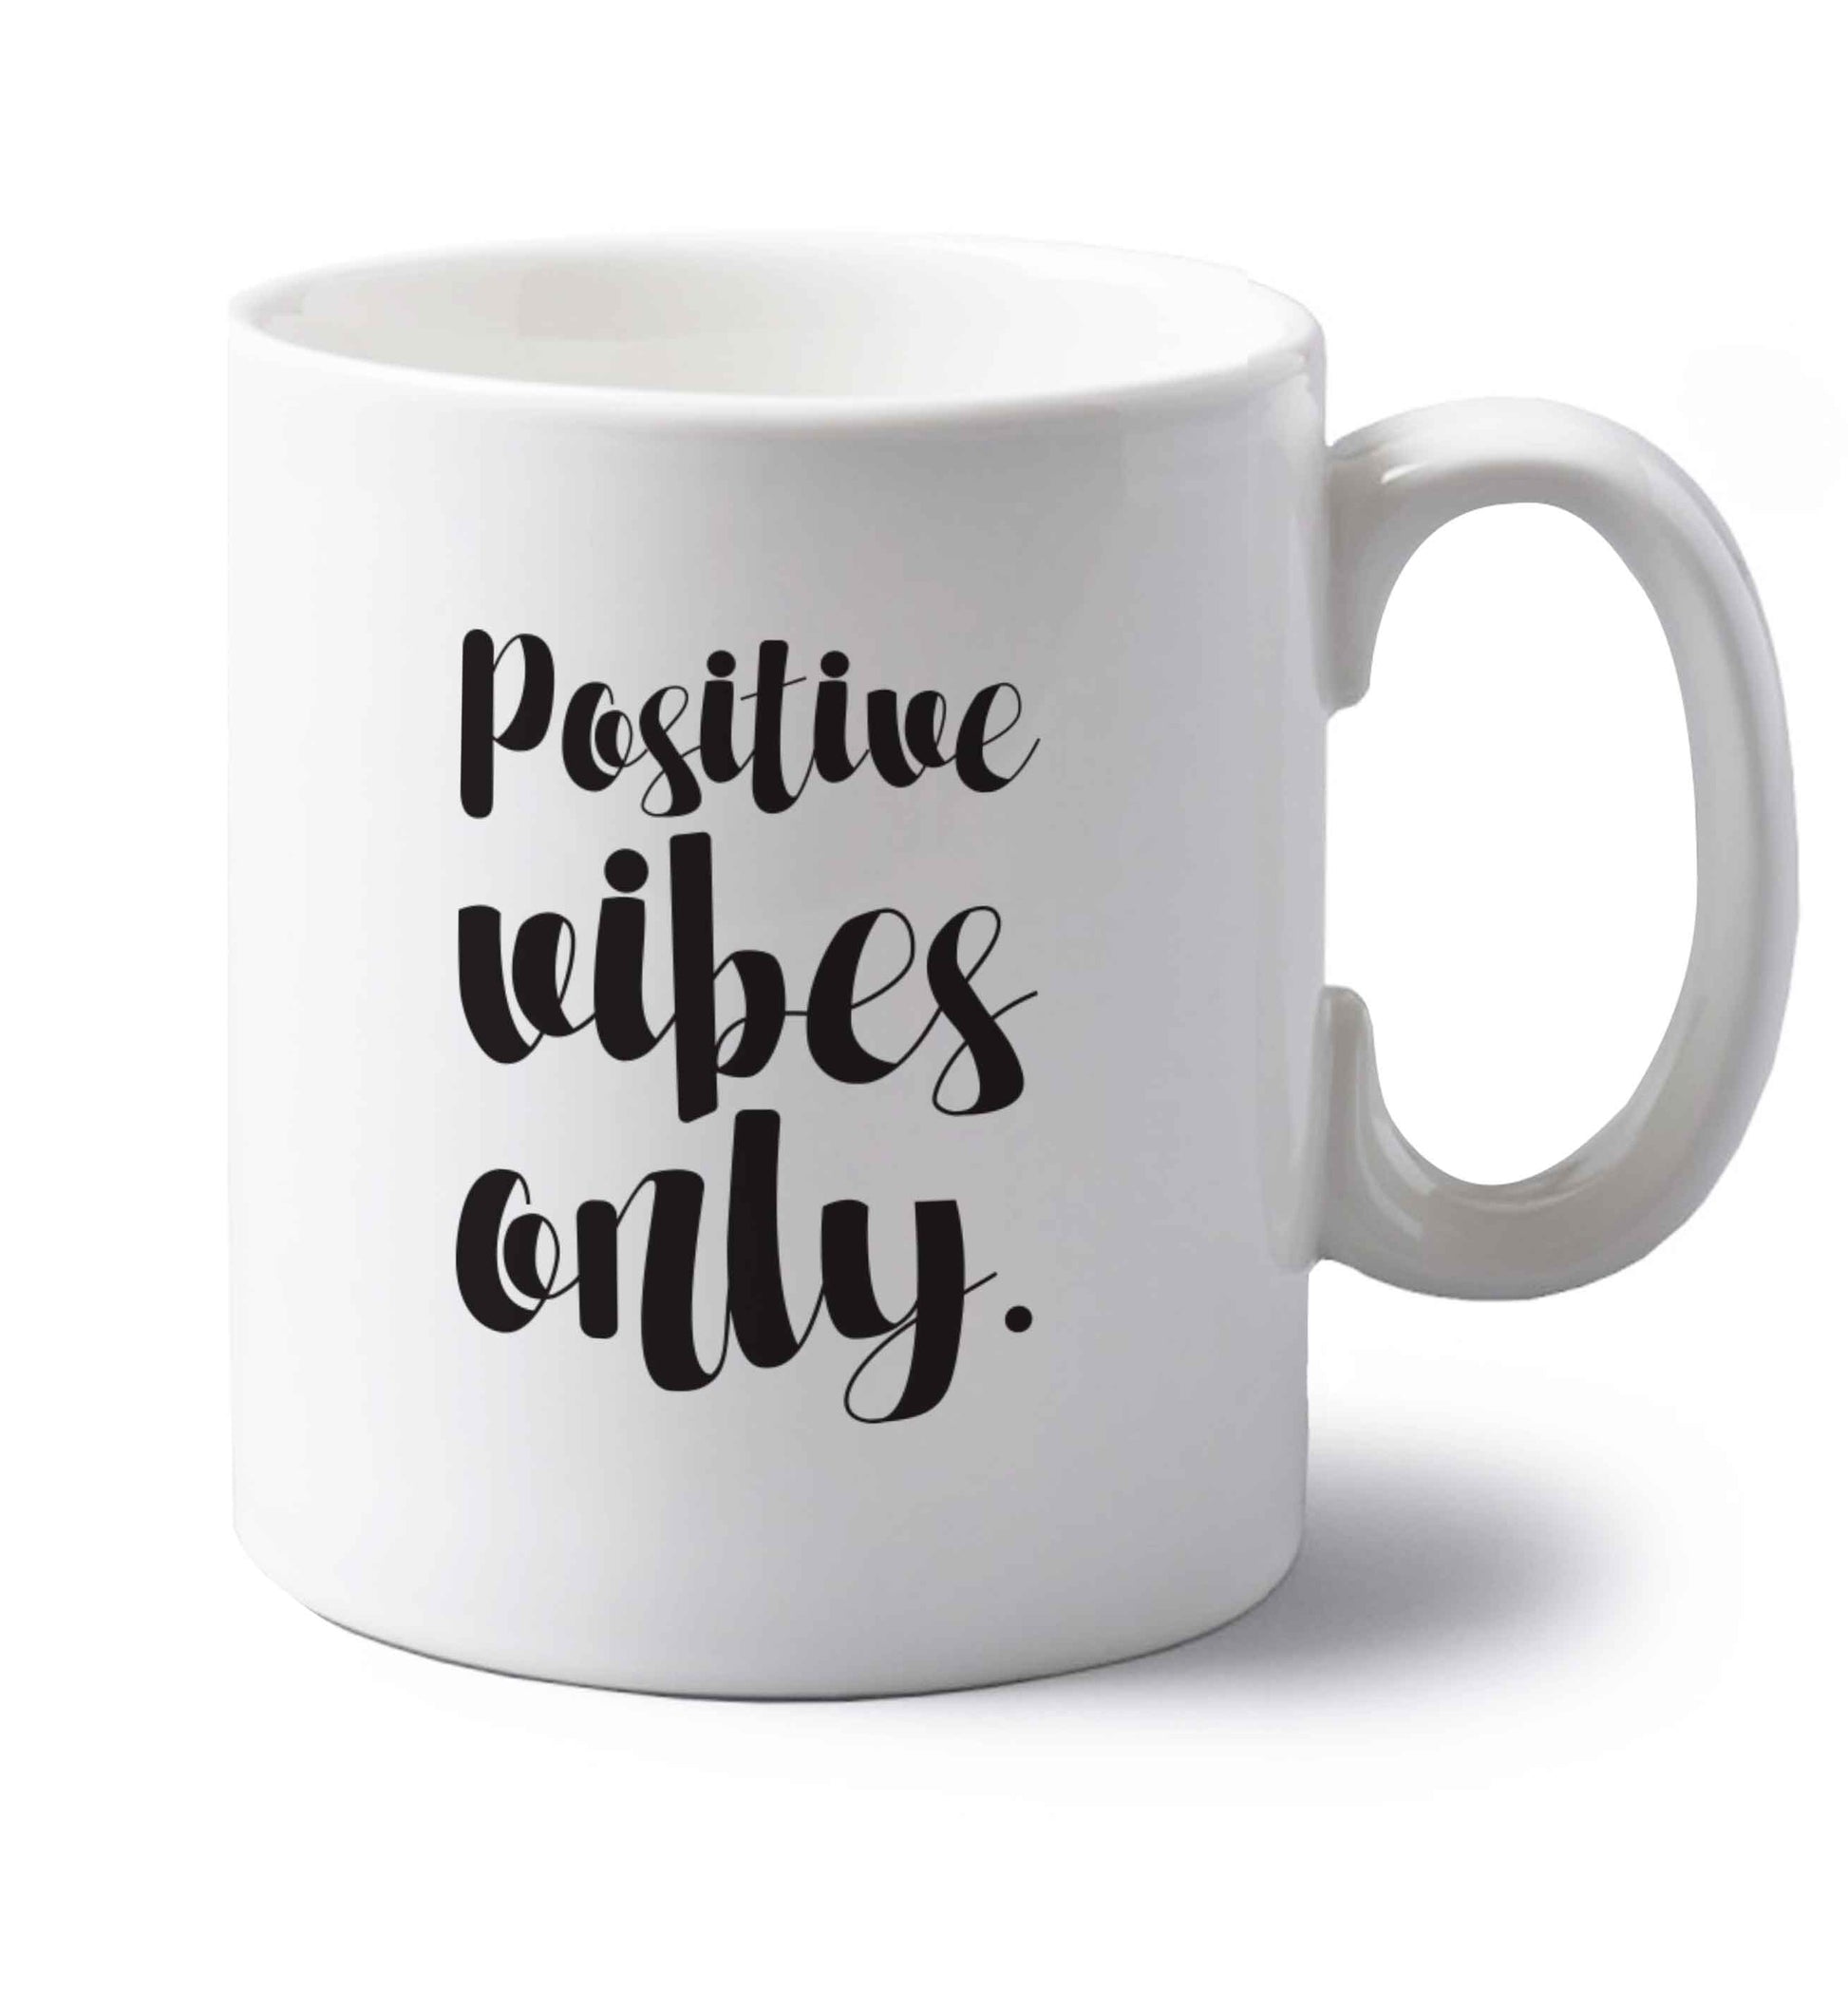 Positive vibes only left handed white ceramic mug 